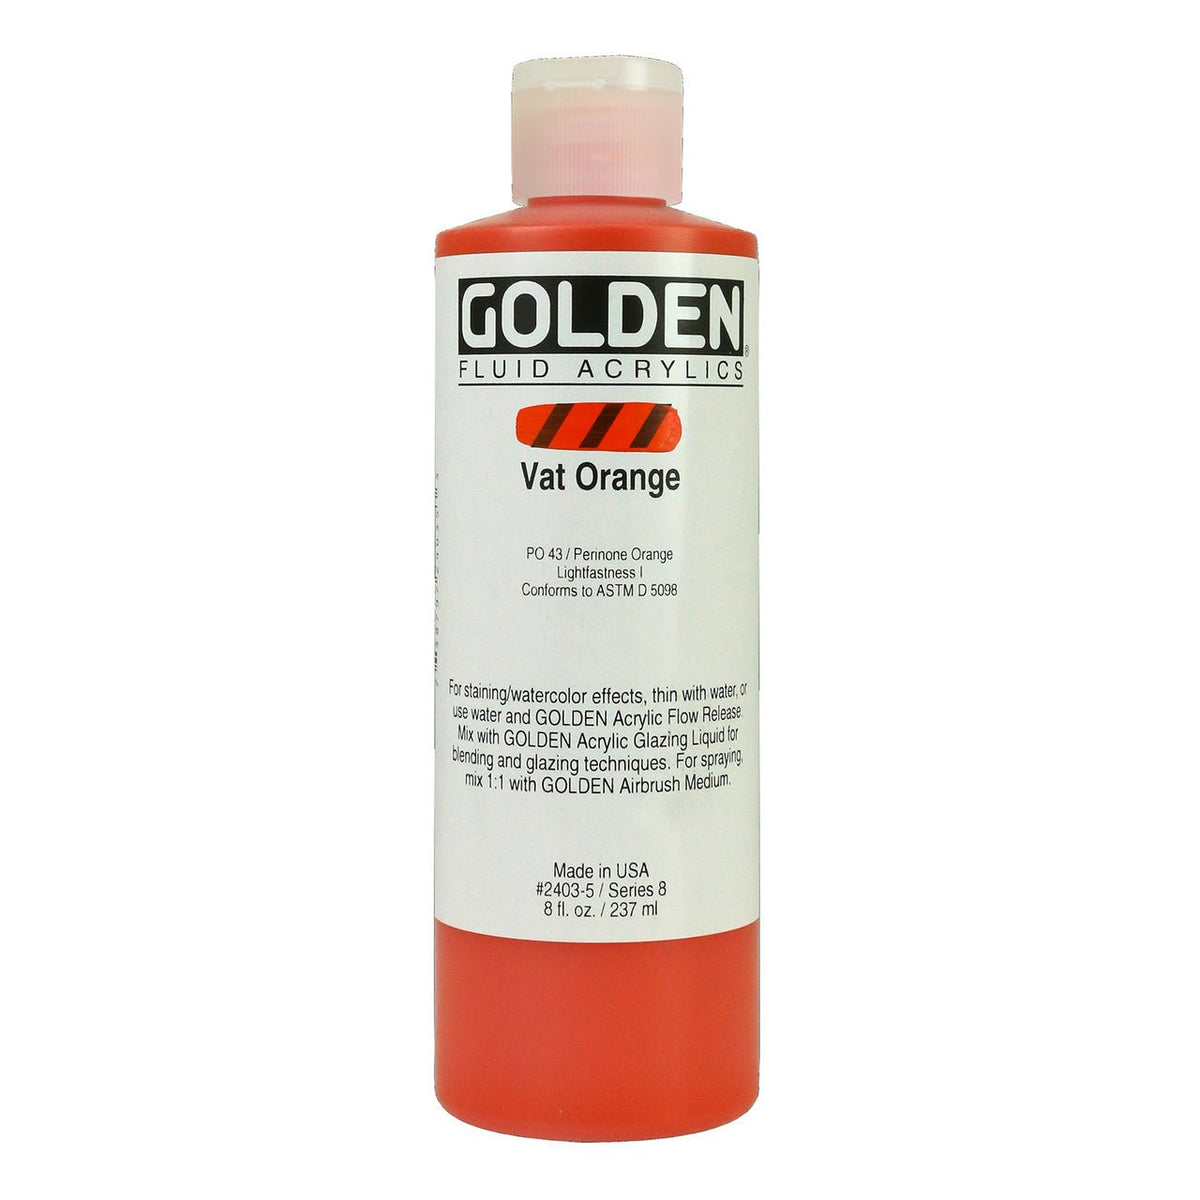 Golden Fluid Acrylic Vat Orange 8 oz - merriartist.com